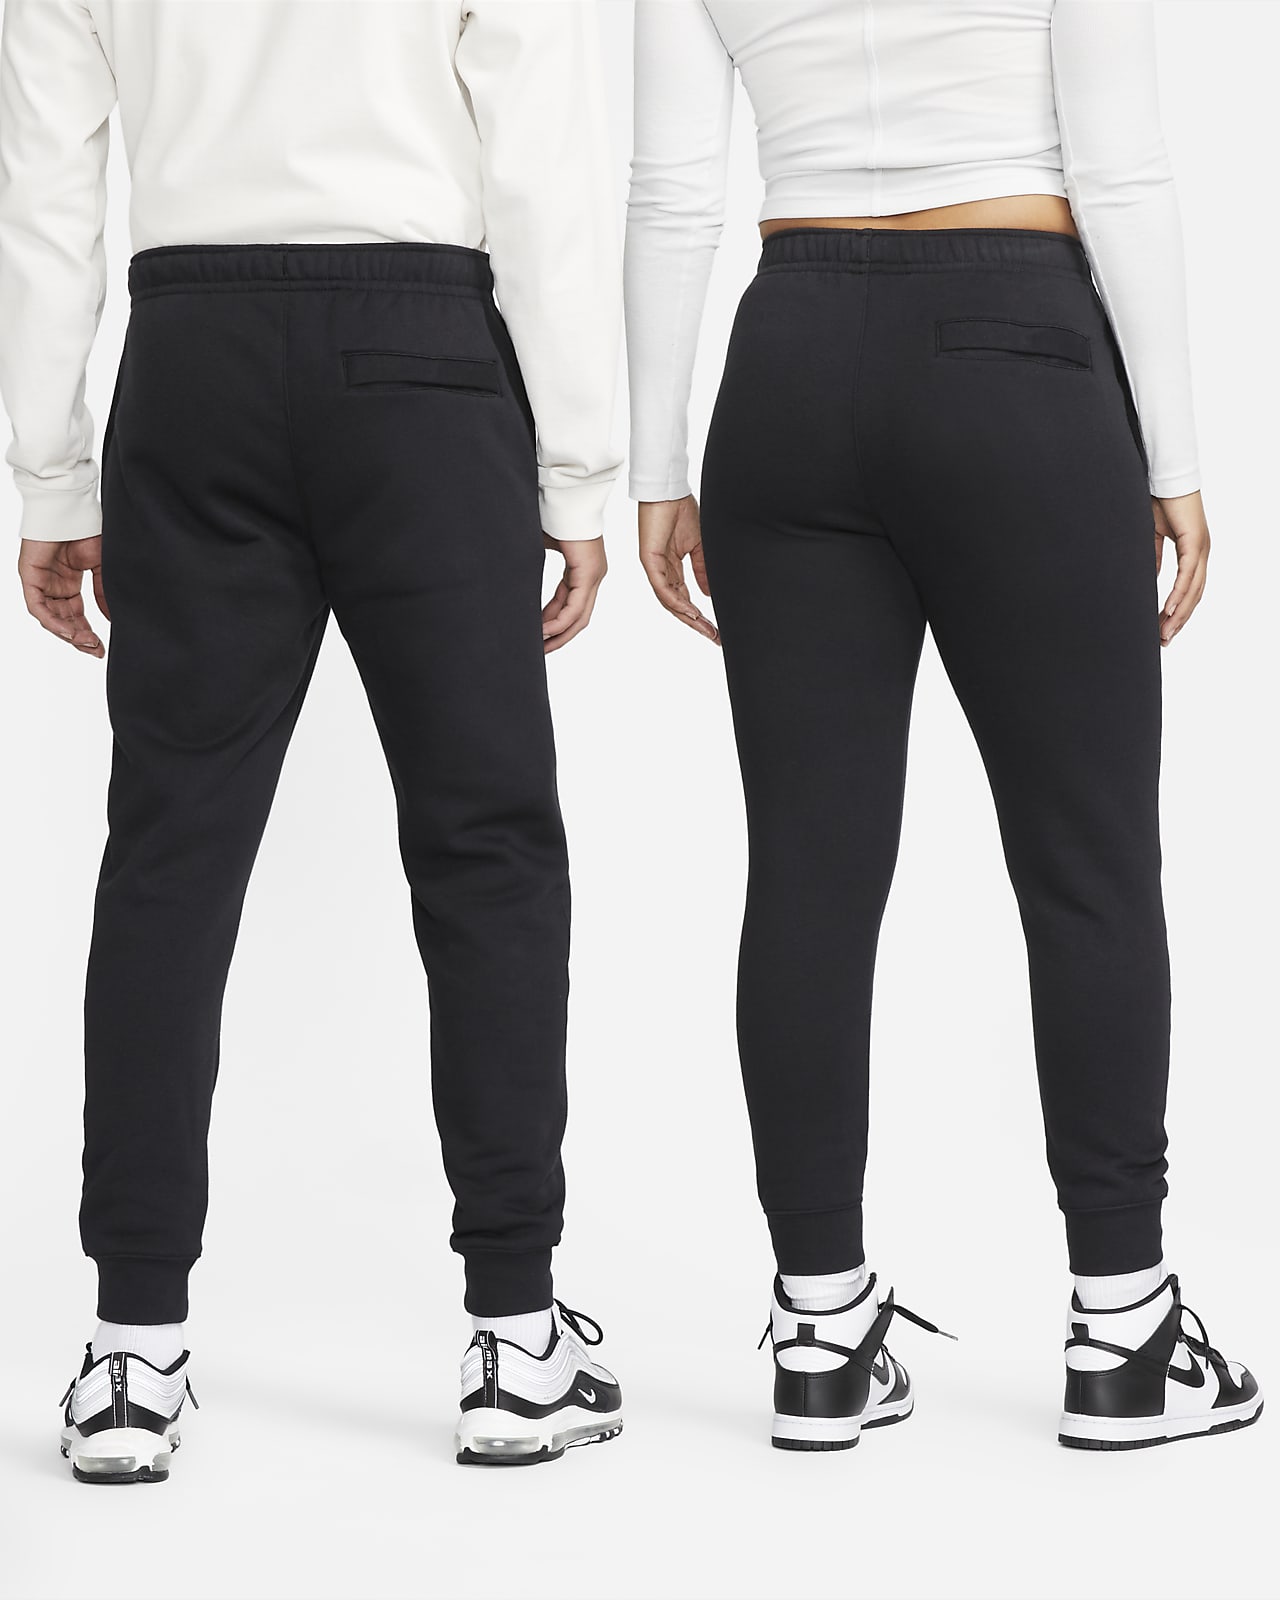 Pantalon de jogging Nike Sportswear Club Fleece. Nike FR